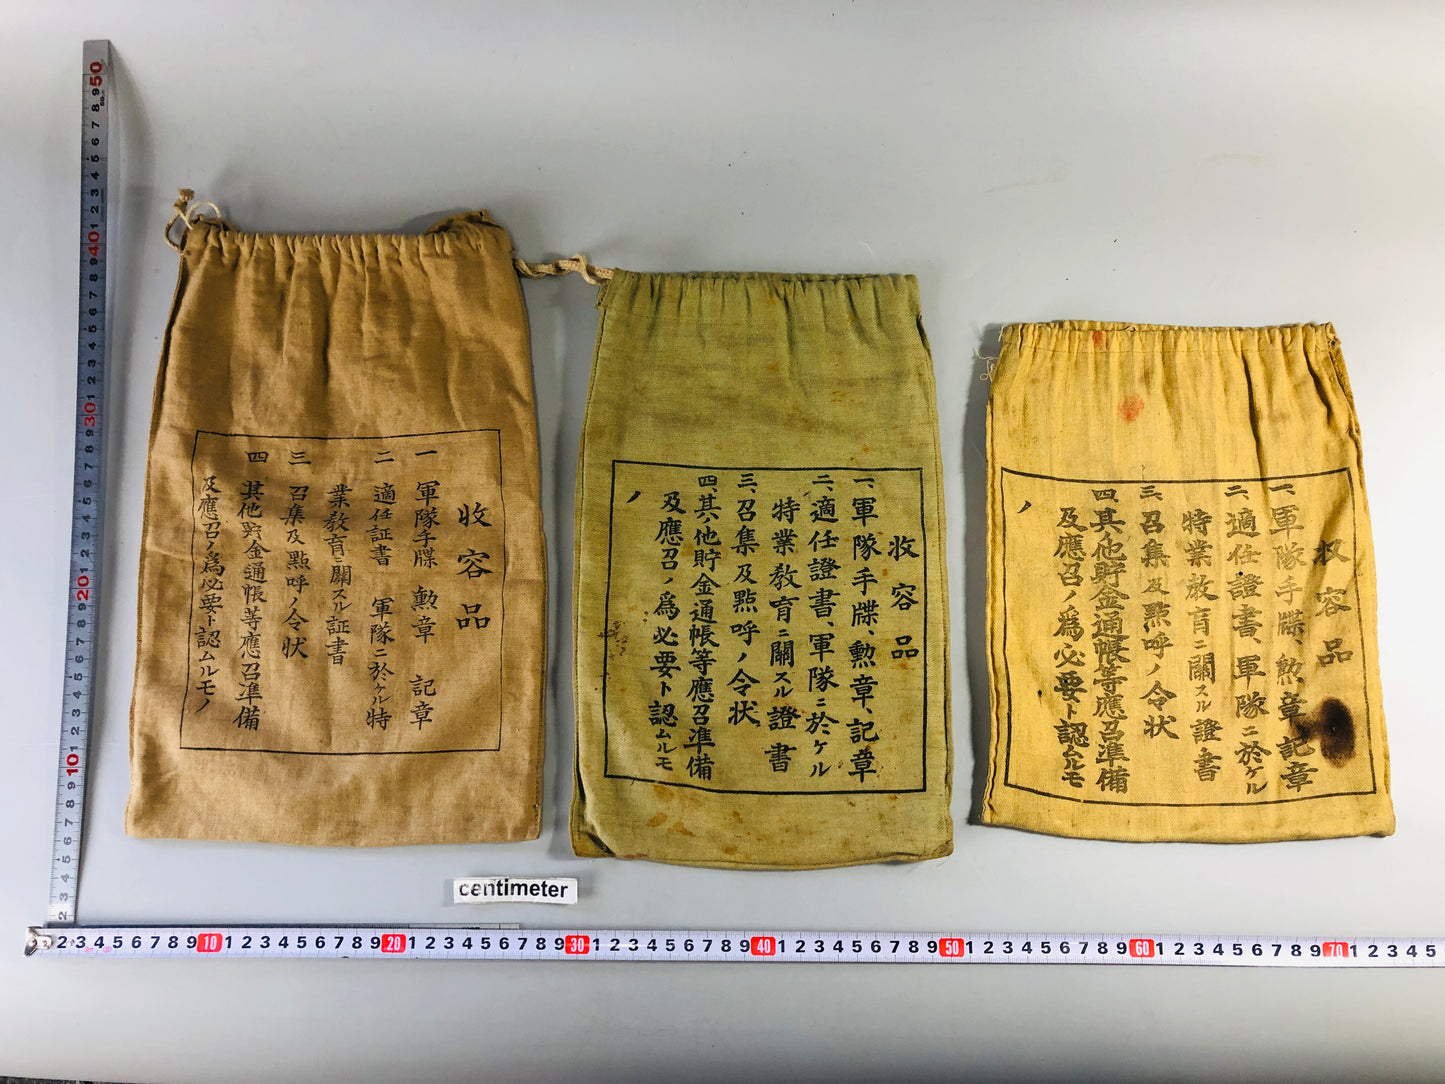 Y7072 Imperial Japan Army Houkoubukuro bag set of 3 military Japan WW2 vintage